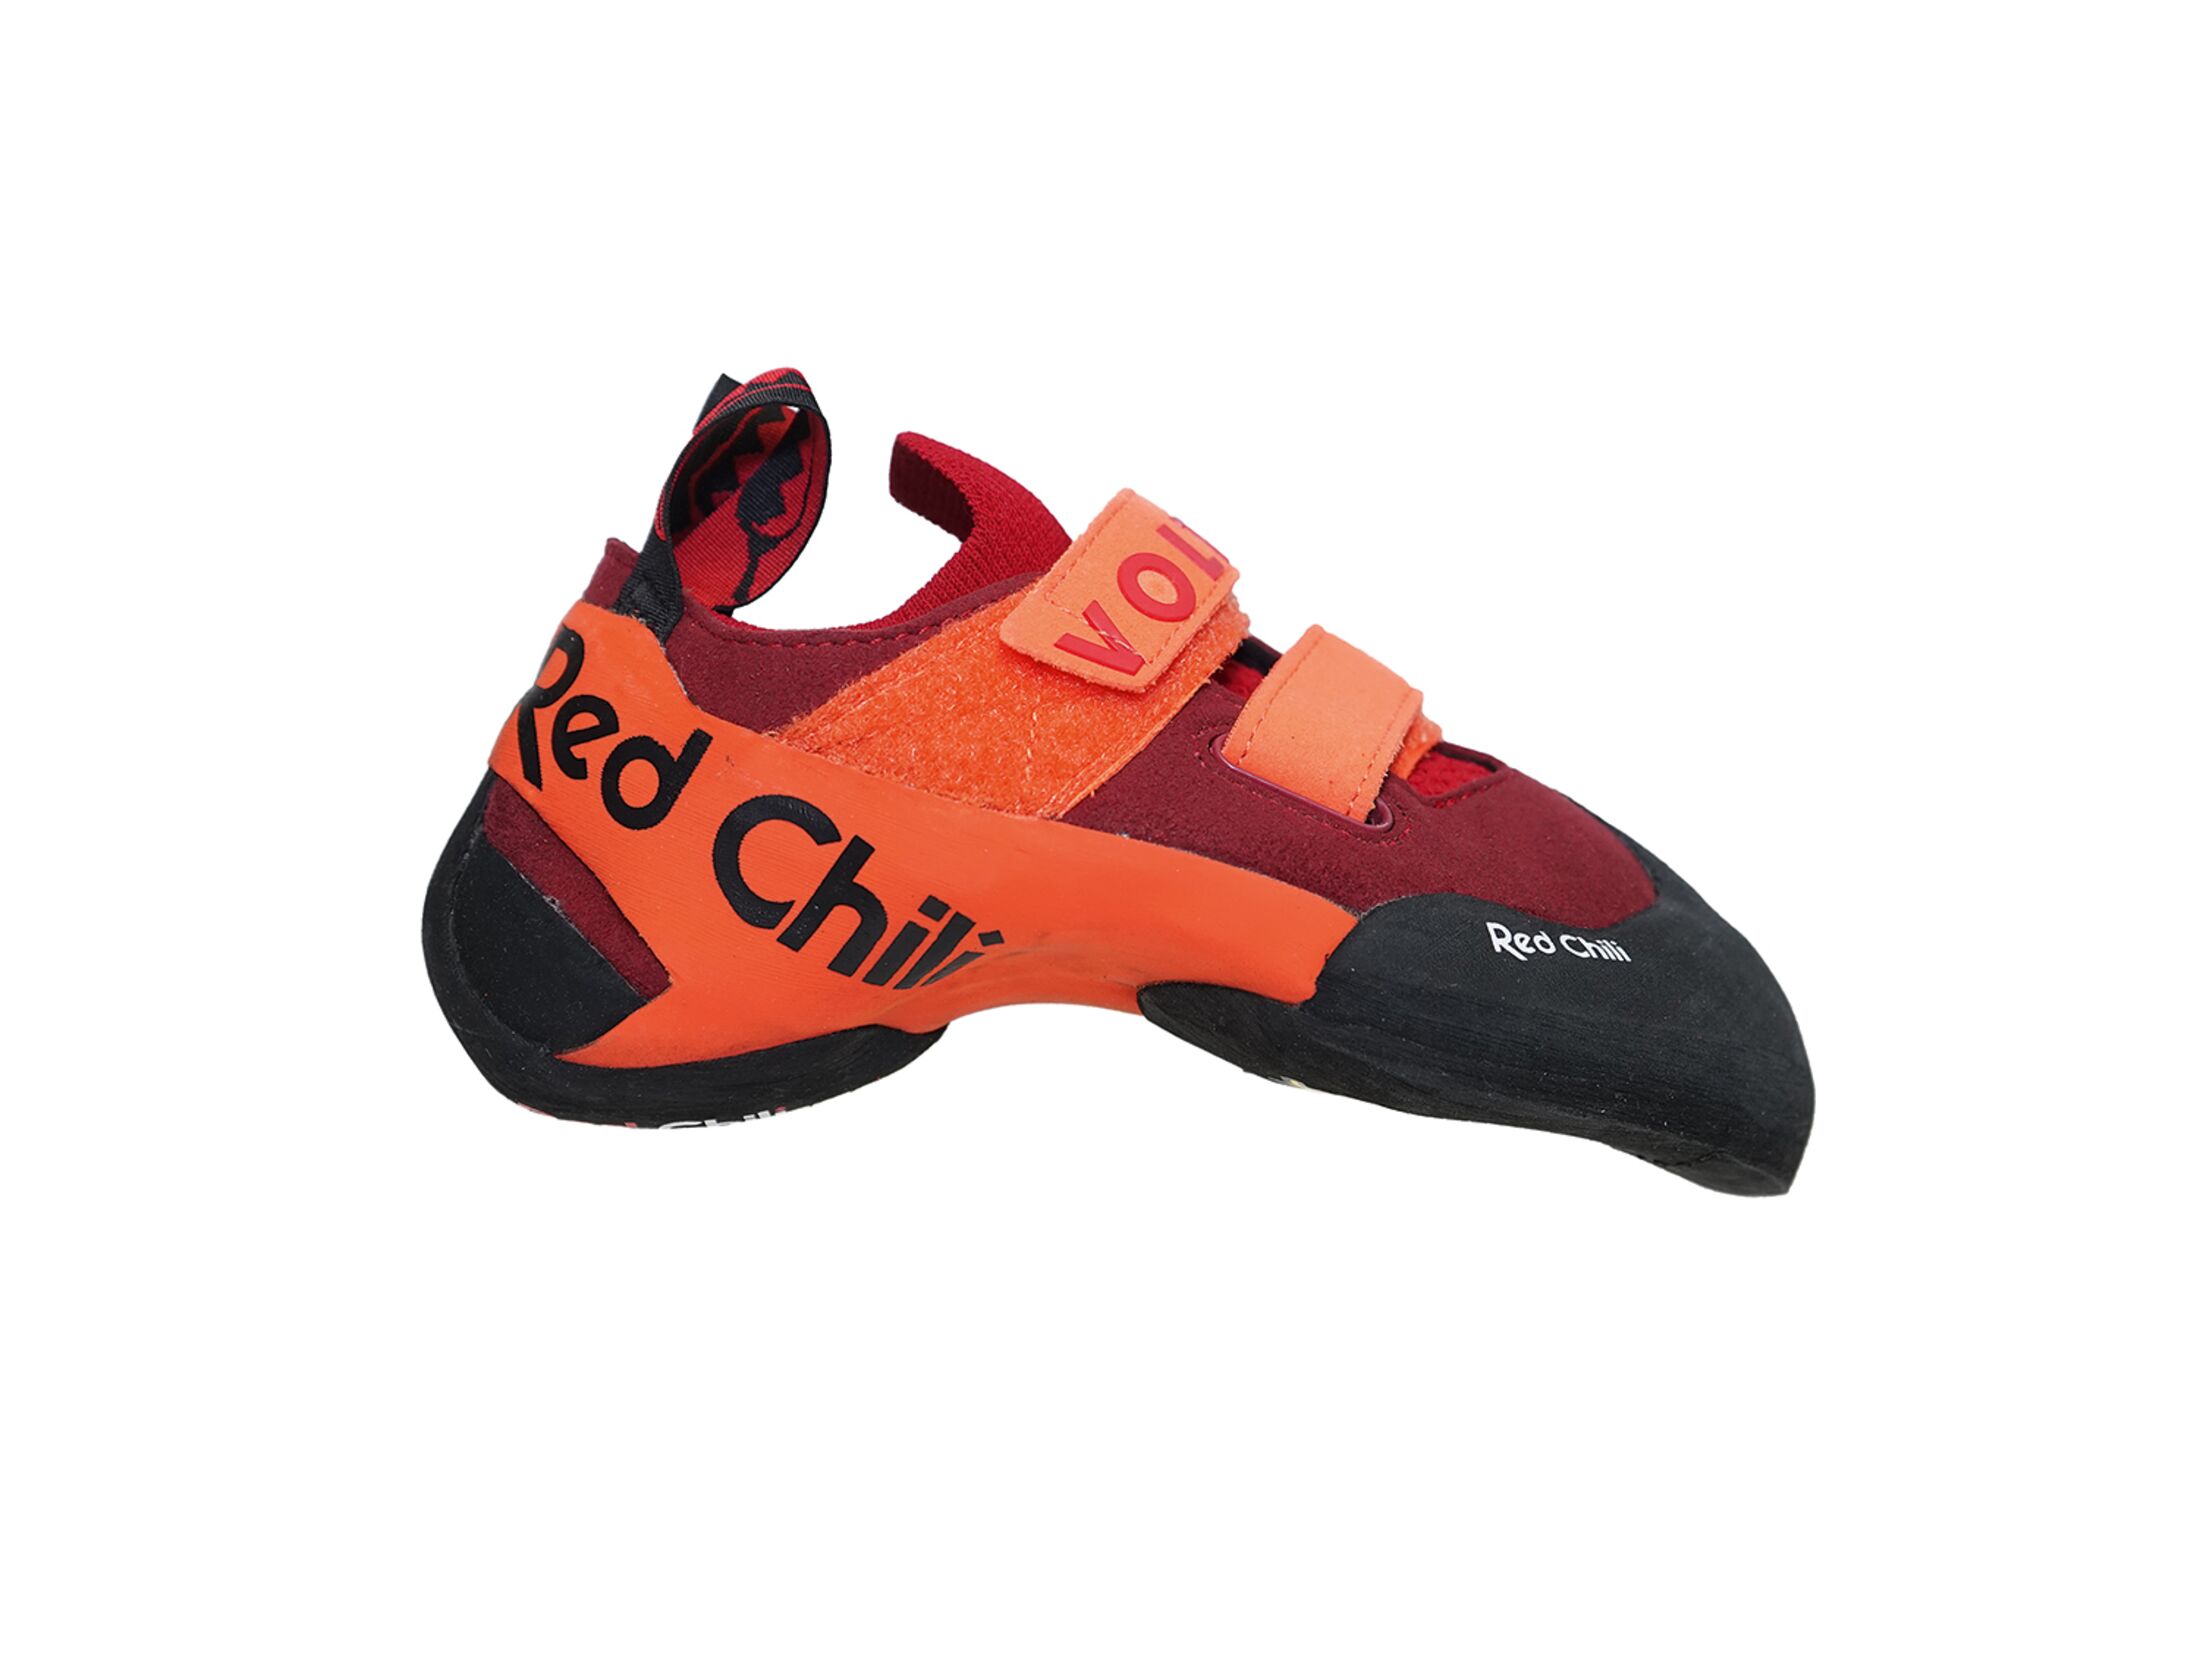 Red Chili Voltage LV Kletterschuh orange-red, Kletterschuhe Herren, Kletterschuhe, Klettern